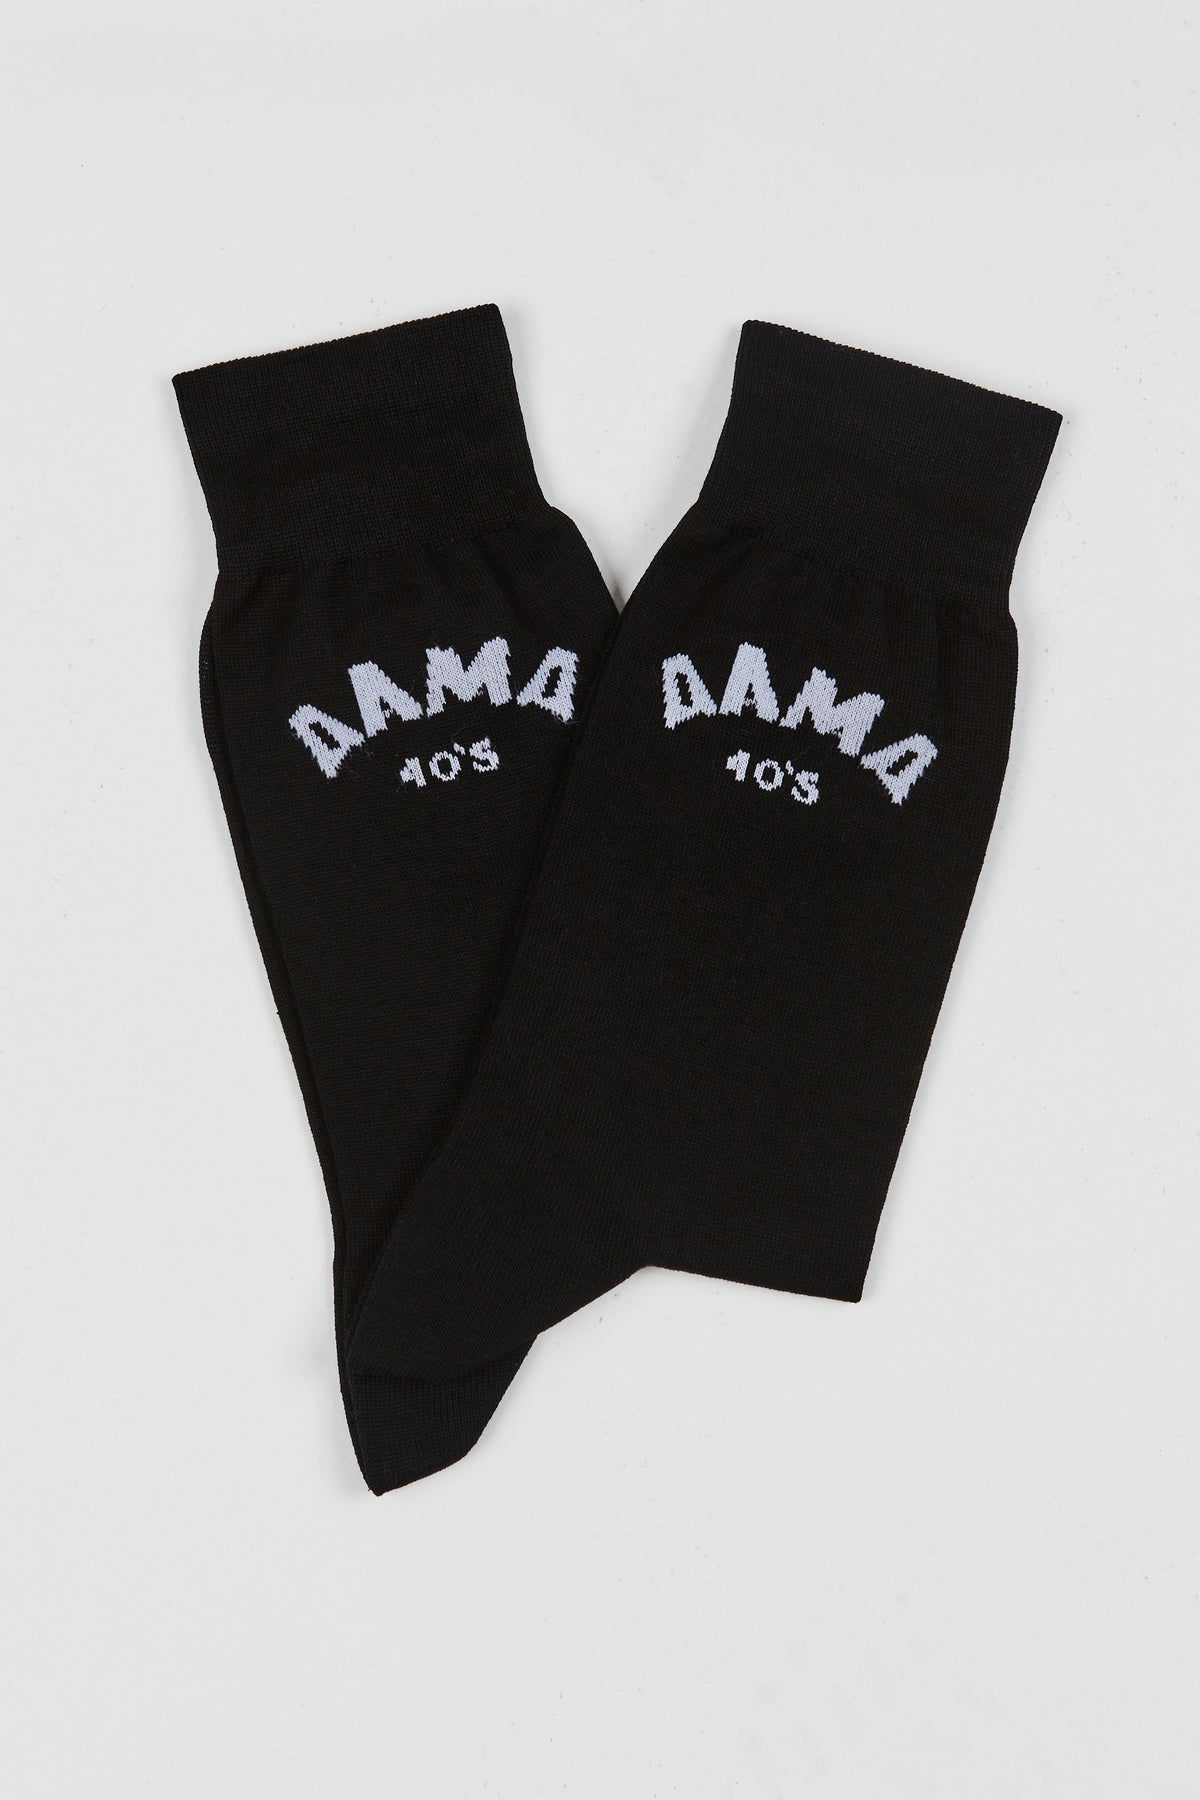 Alma 40s Socks Black